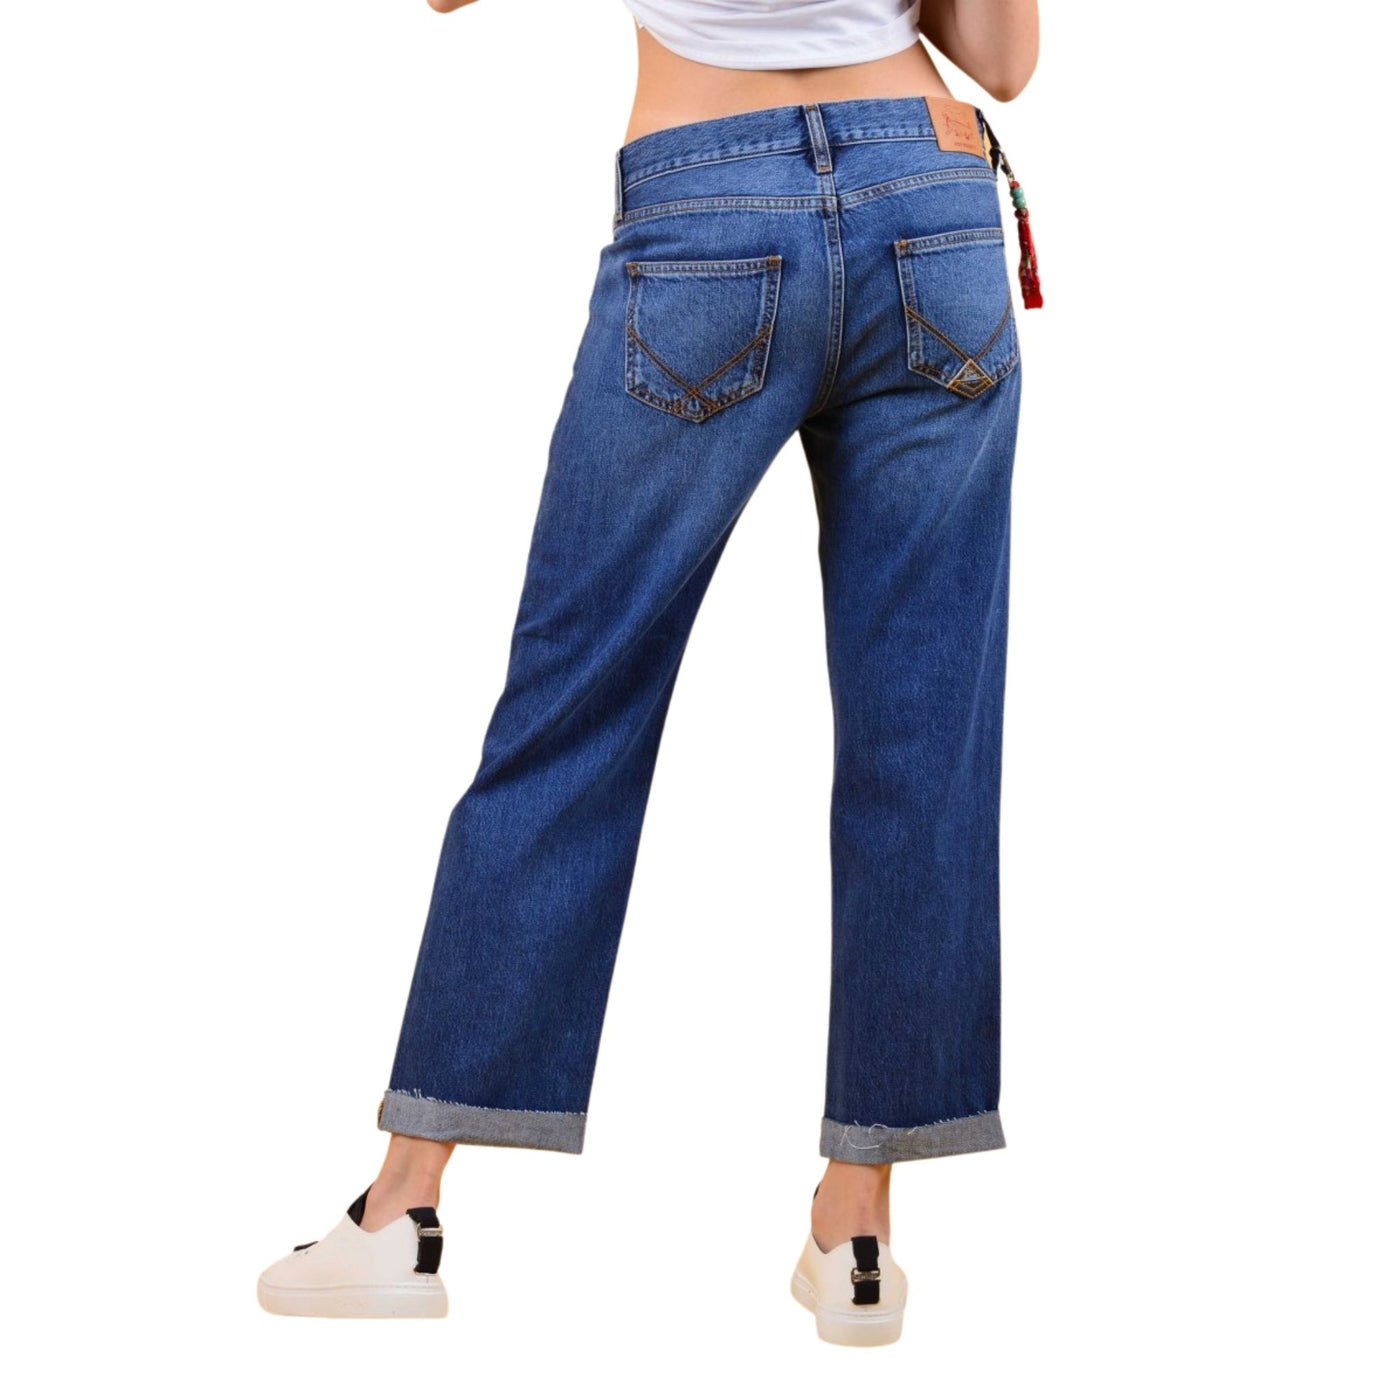 Jeans da donna firmati Roy Roger's su modella vista retro